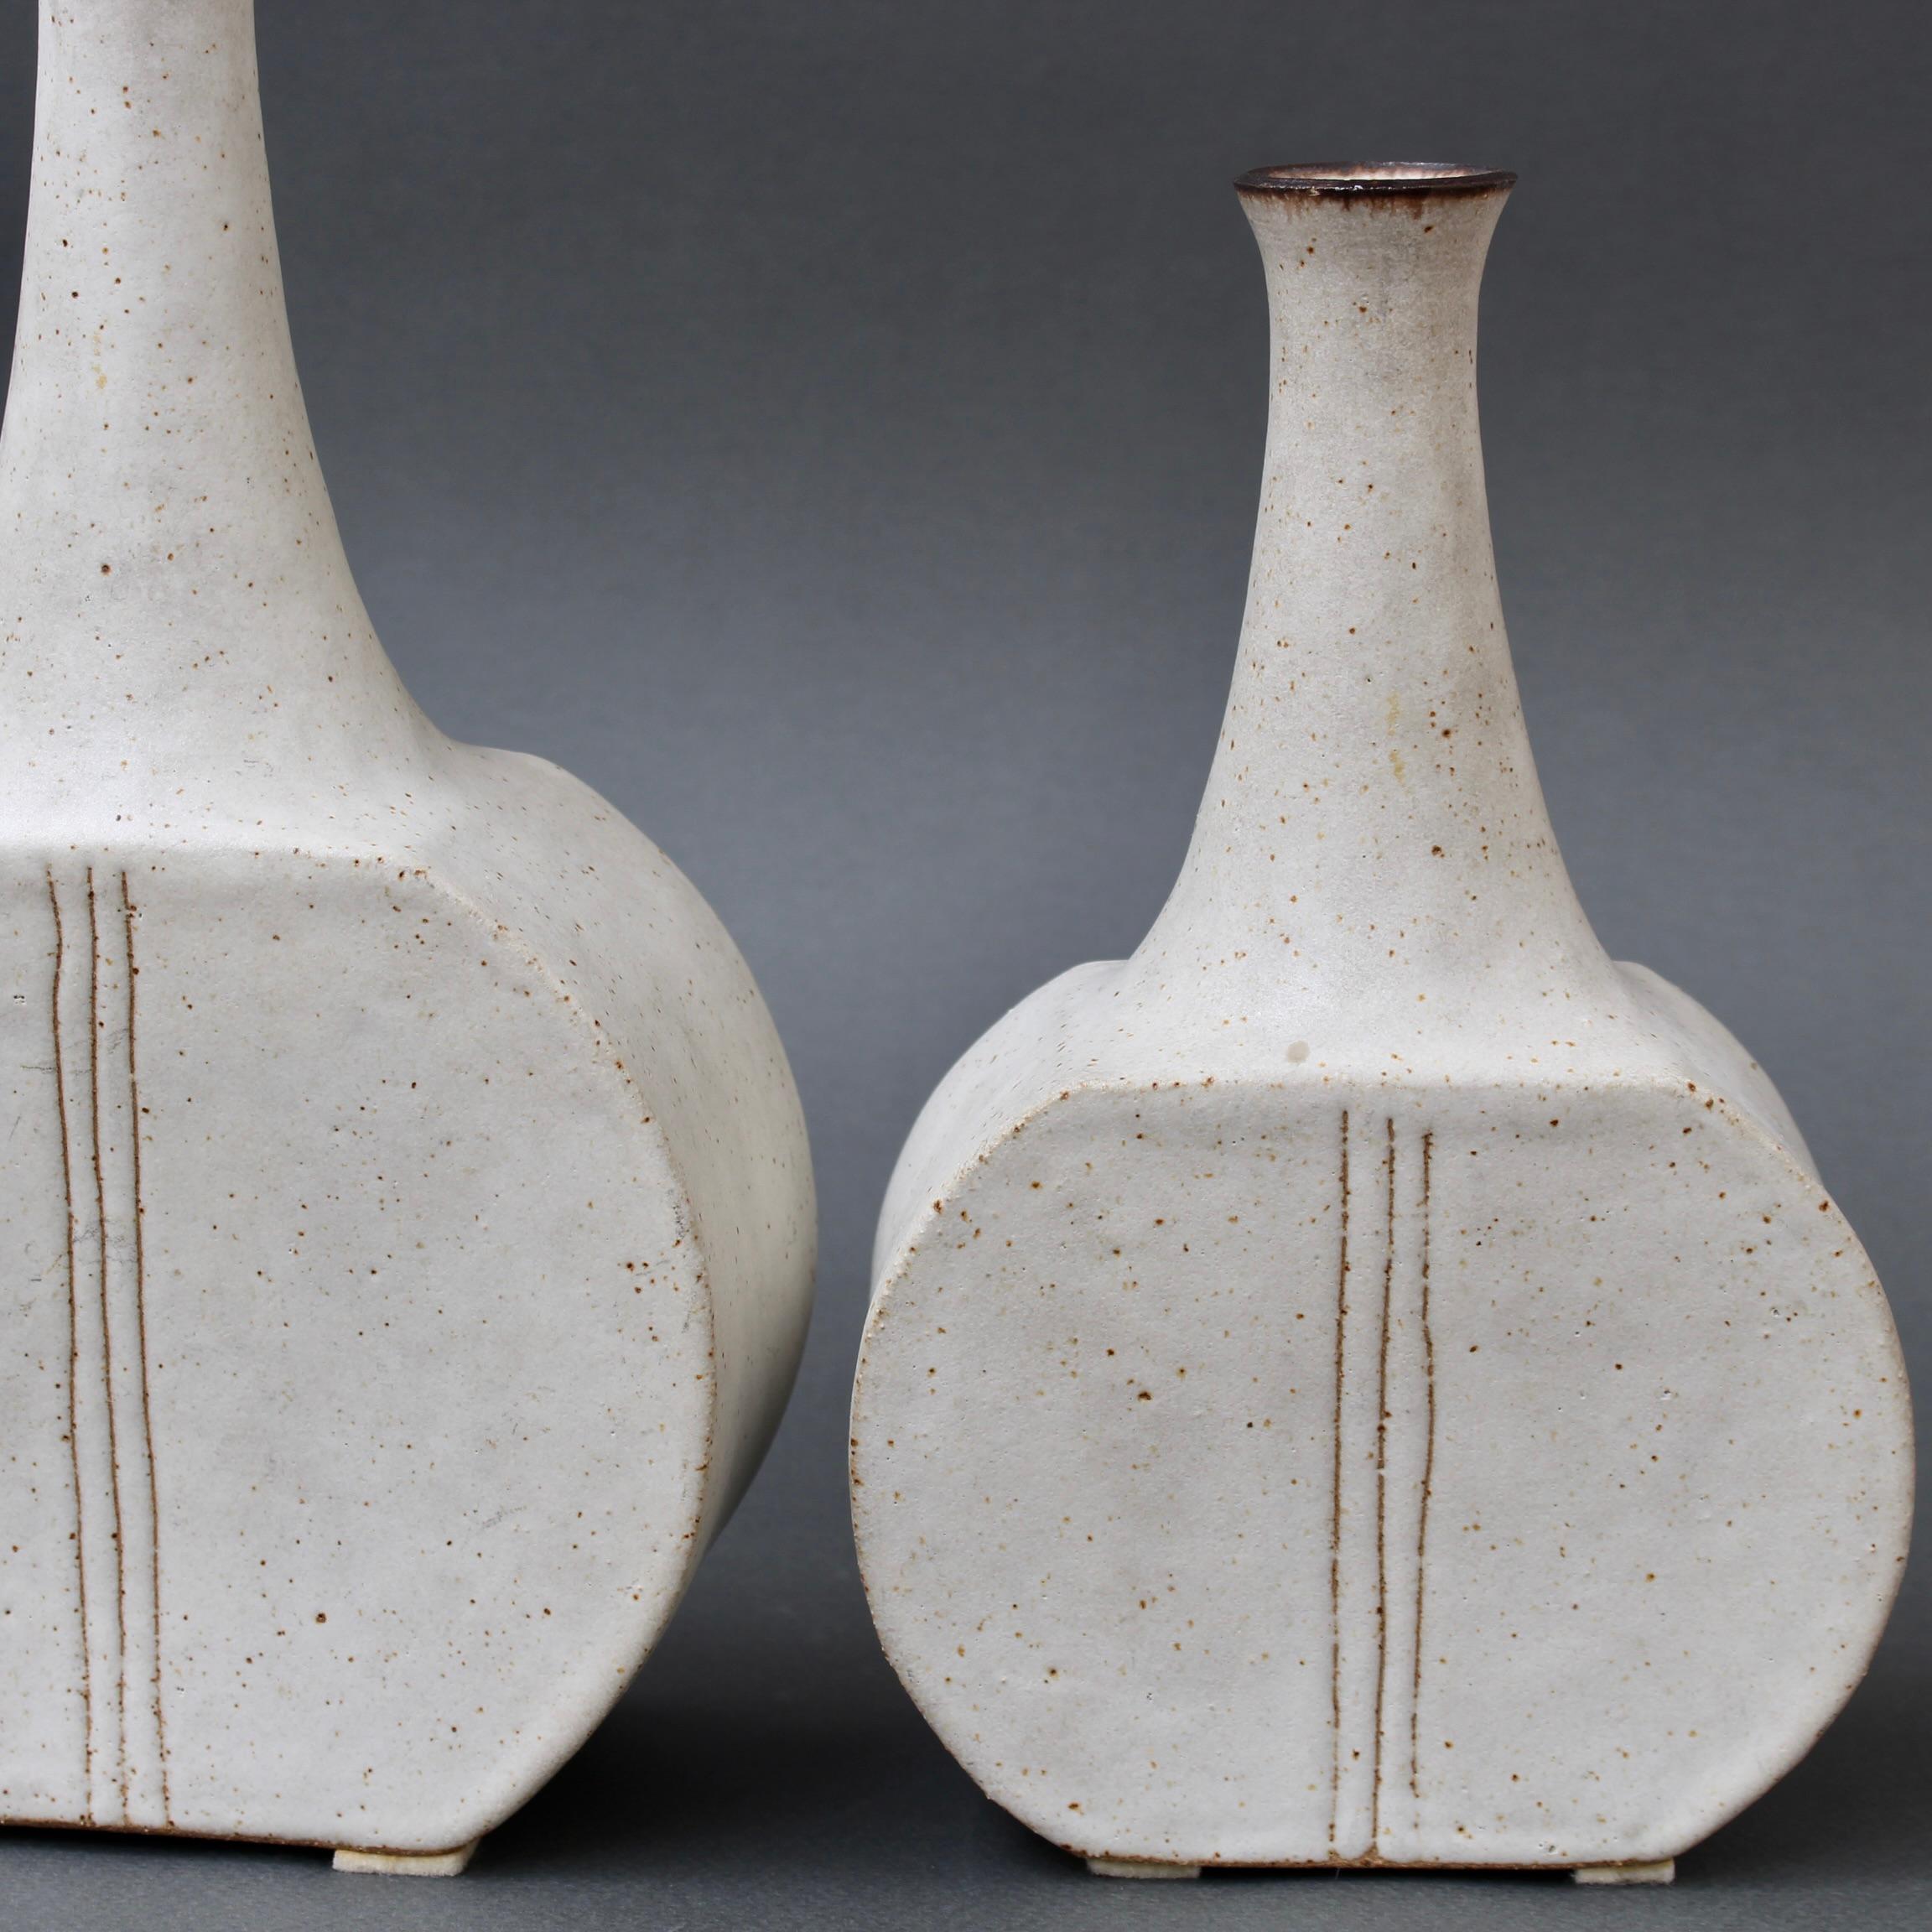 Late 20th Century Pair of Italian Ceramic Bottles by Bruno Gambone (circa 1980s)